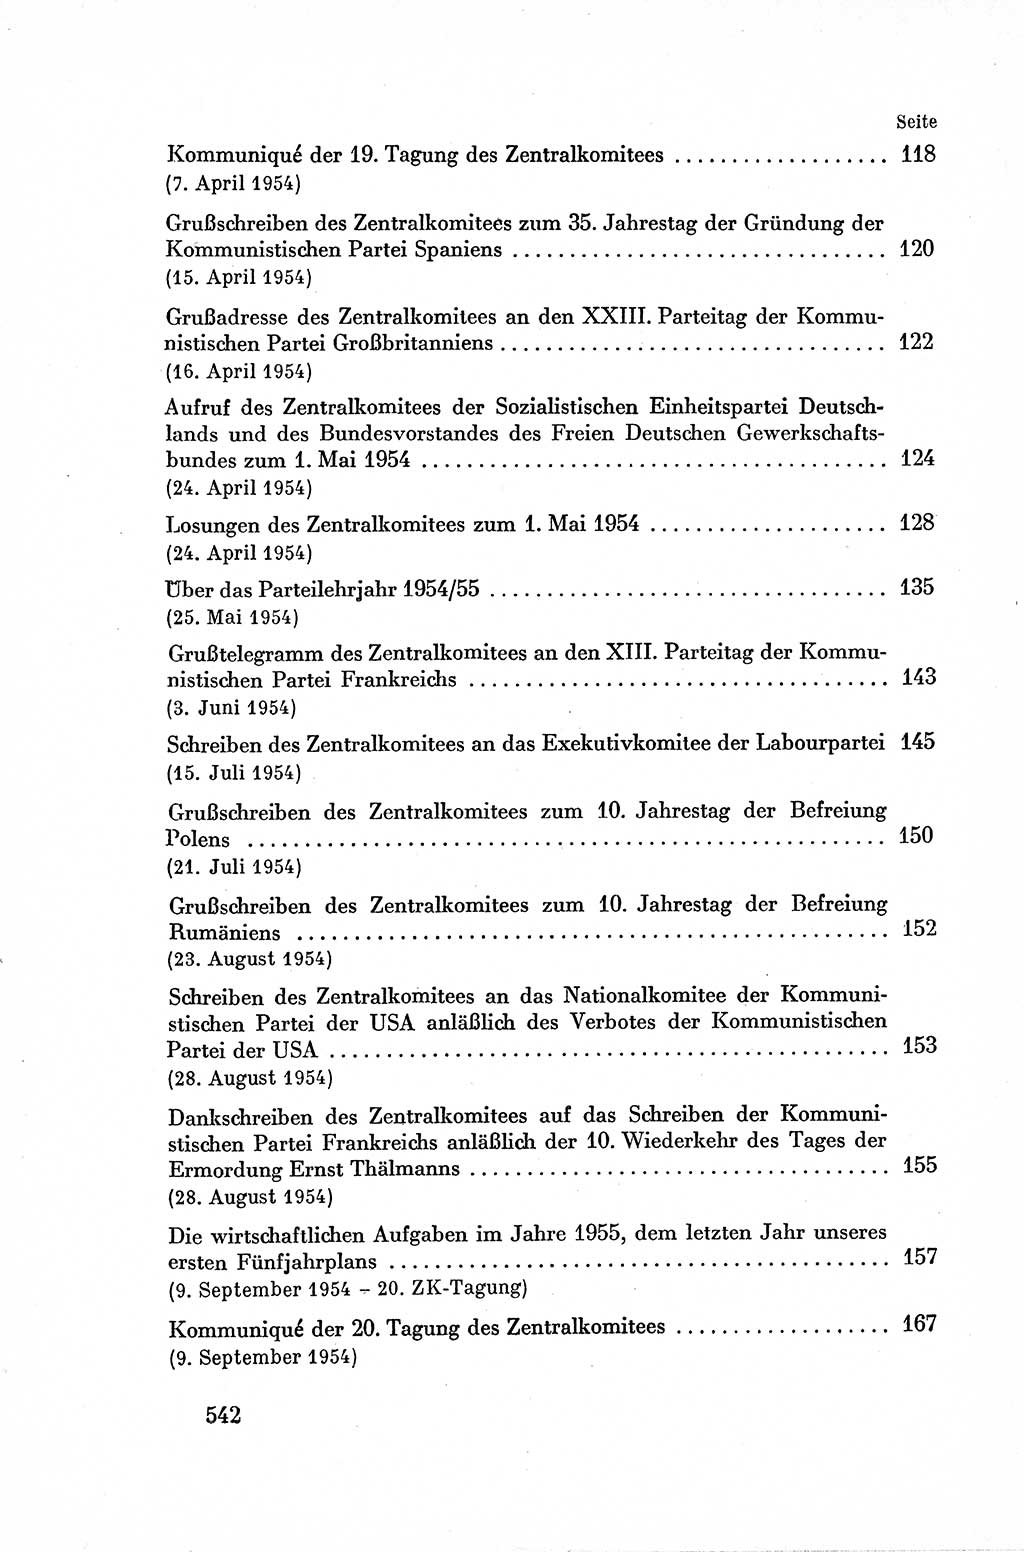 Dokumente der Sozialistischen Einheitspartei Deutschlands (SED) [Deutsche Demokratische Republik (DDR)] 1954-1955, Seite 542 (Dok. SED DDR 1954-1955, S. 542)